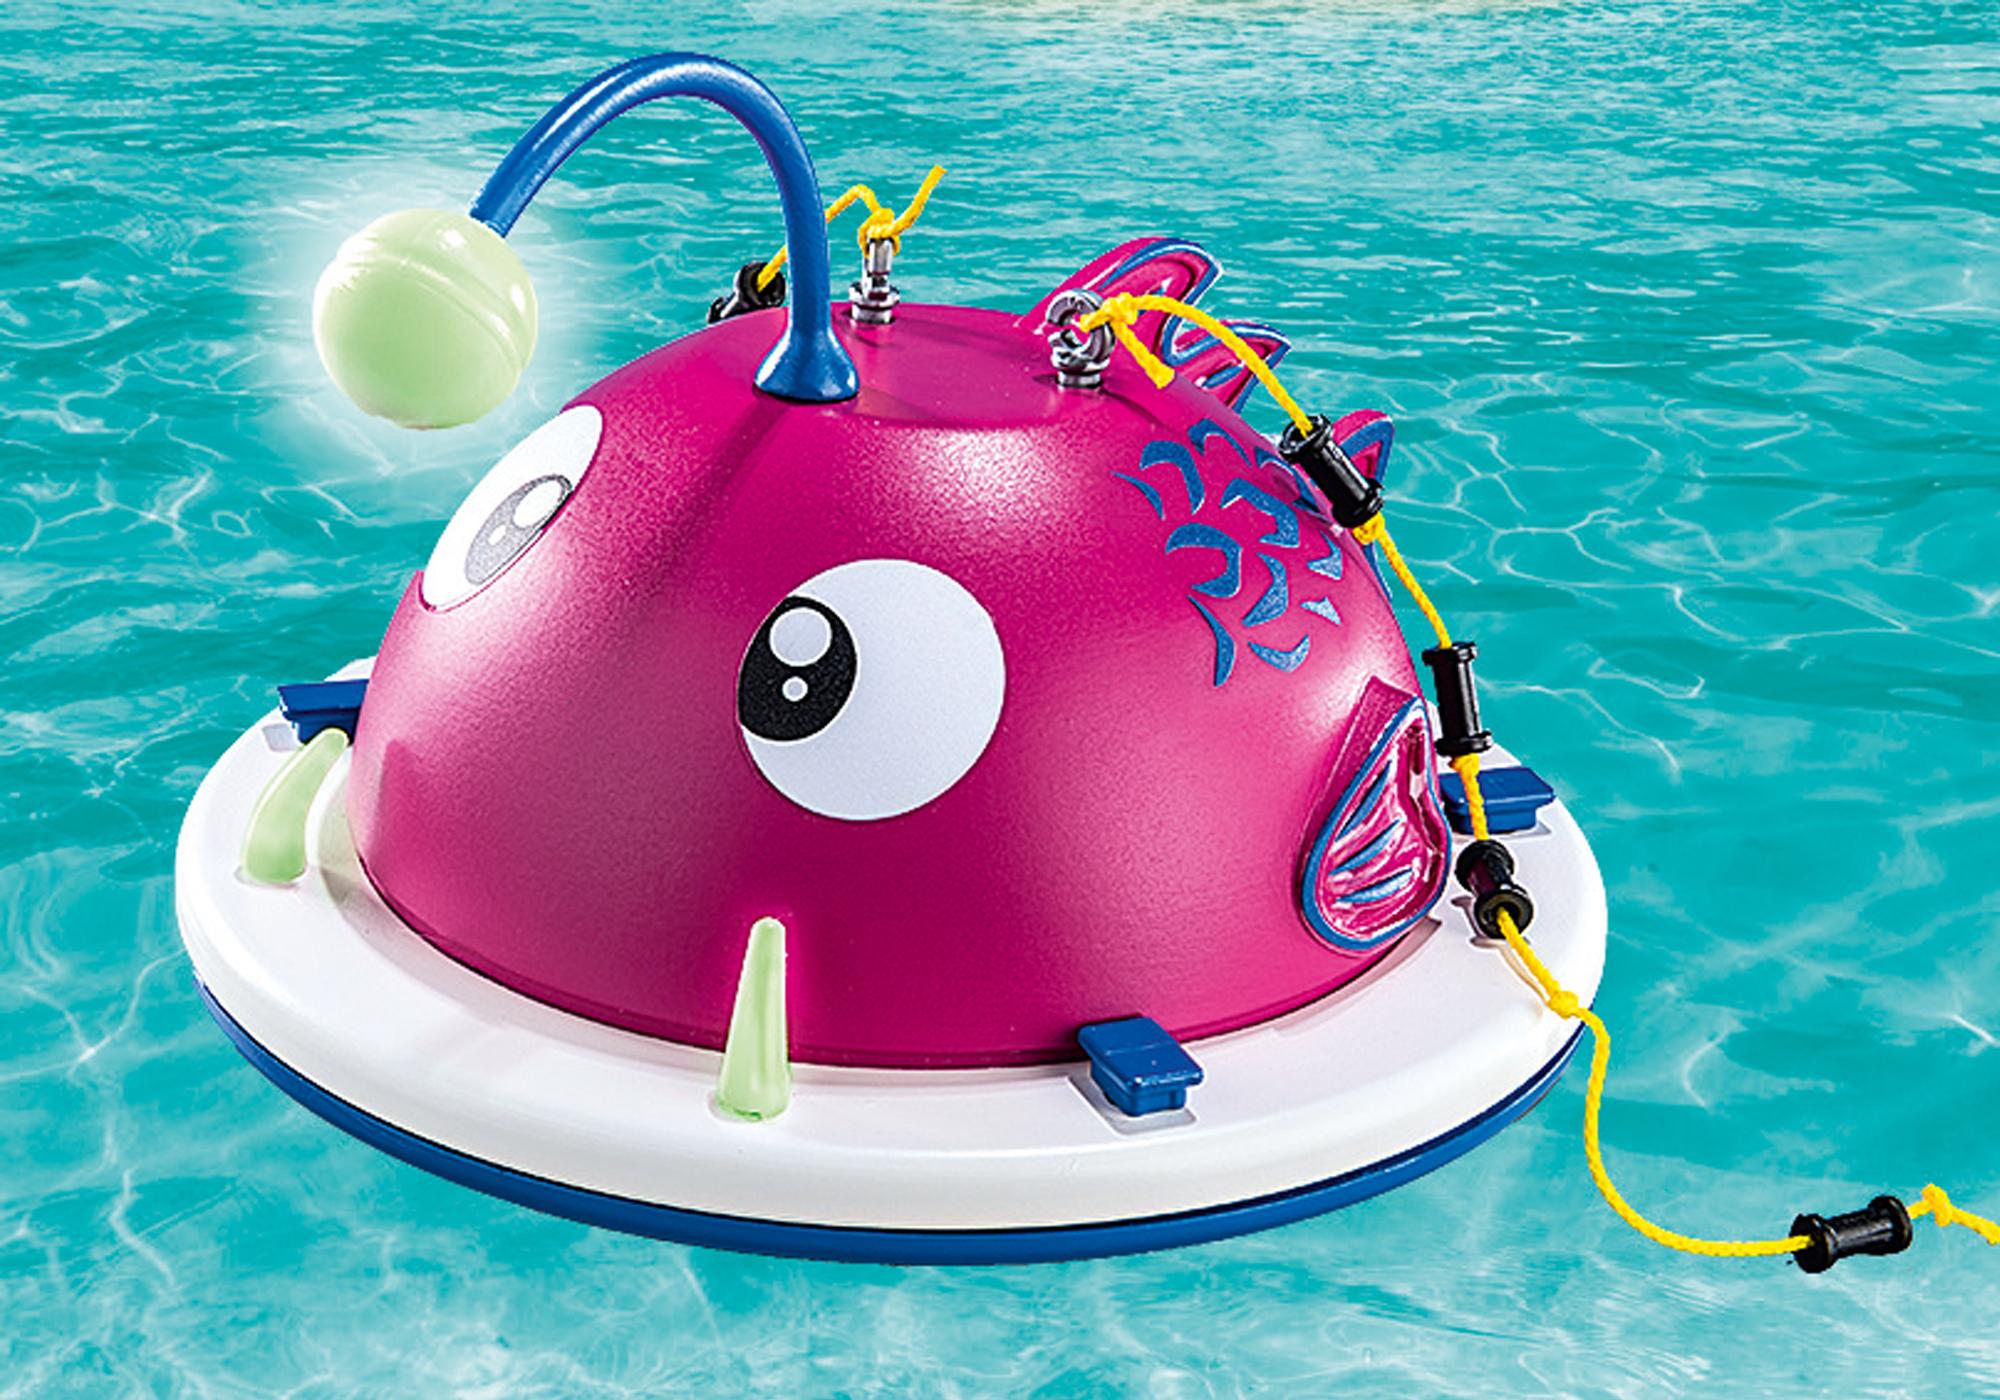 Playmobil aire de jeux aquatiques - Playmobil